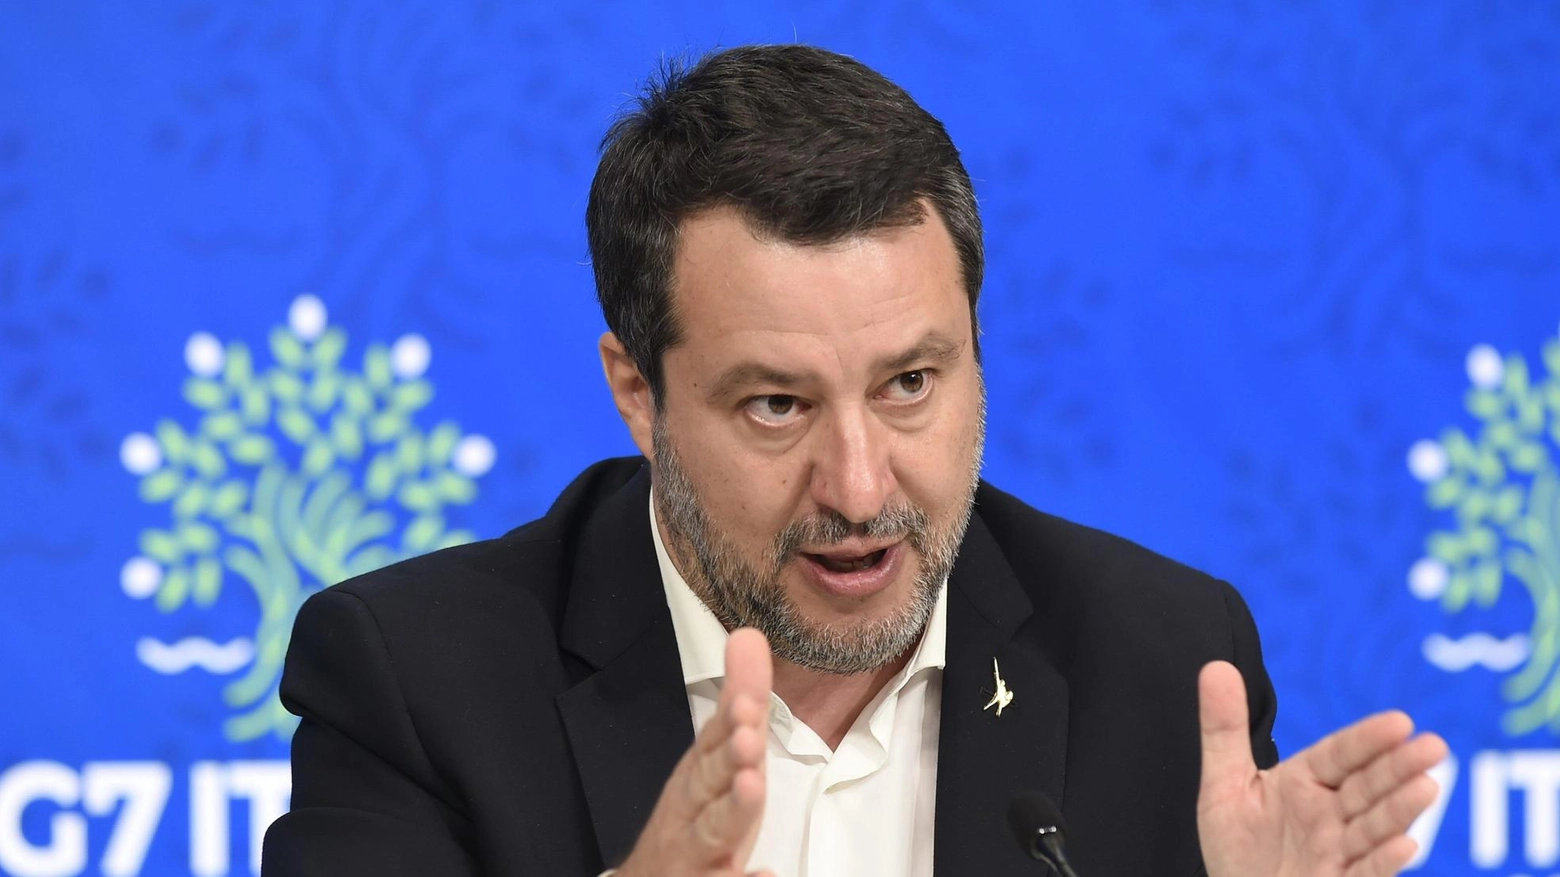 Passa il ‘Salva casa’. L’esultanza di Salvini:: "Rivoluzione liberale". La sinistra: un condono